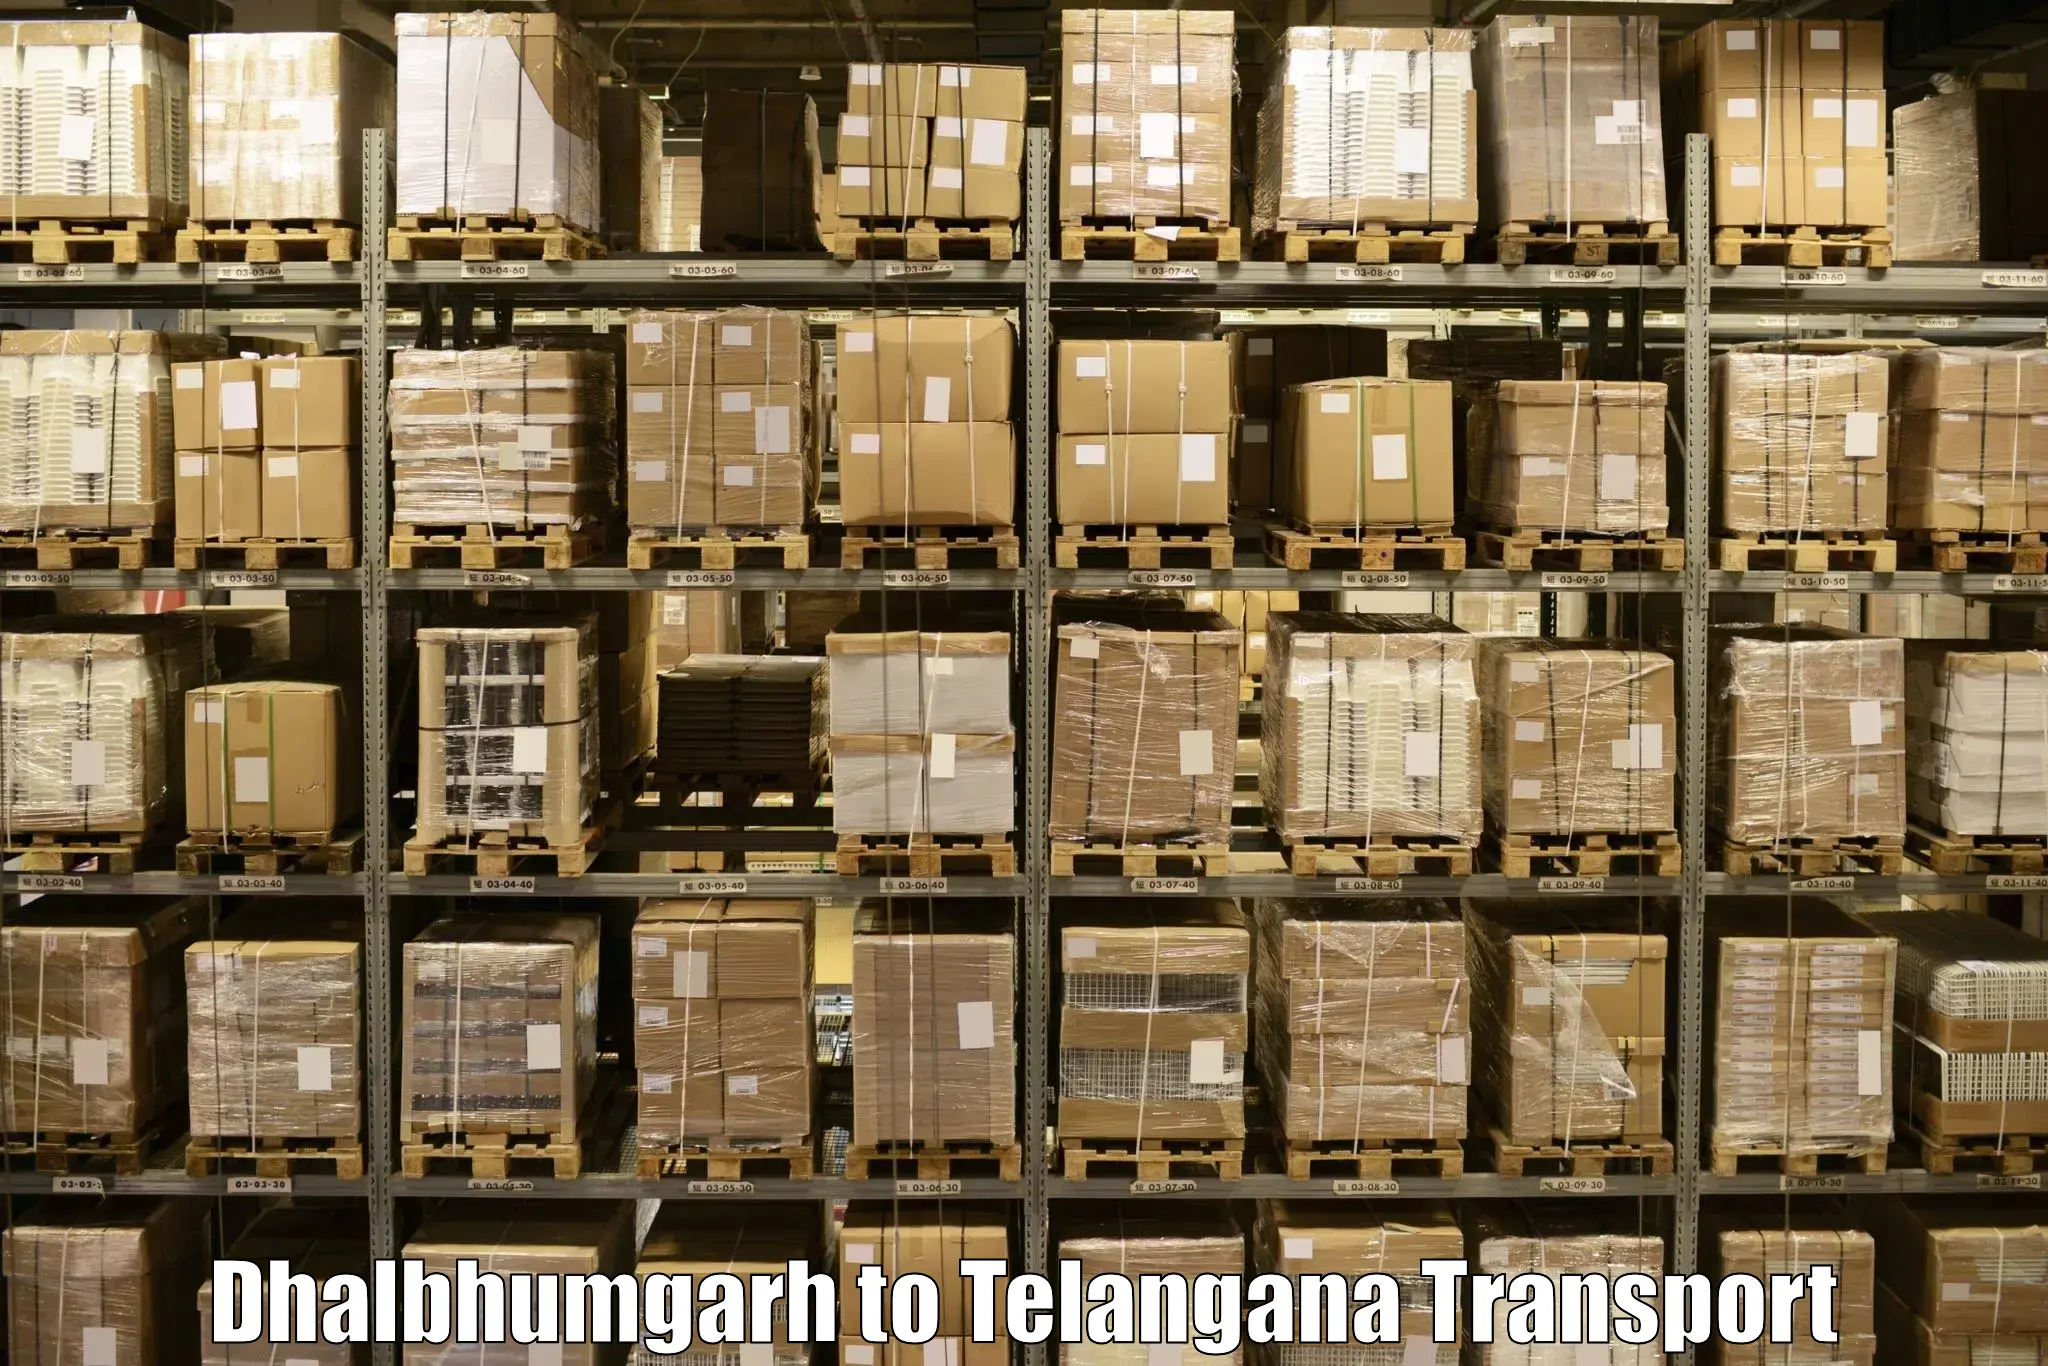 Truck transport companies in India Dhalbhumgarh to Tiryani